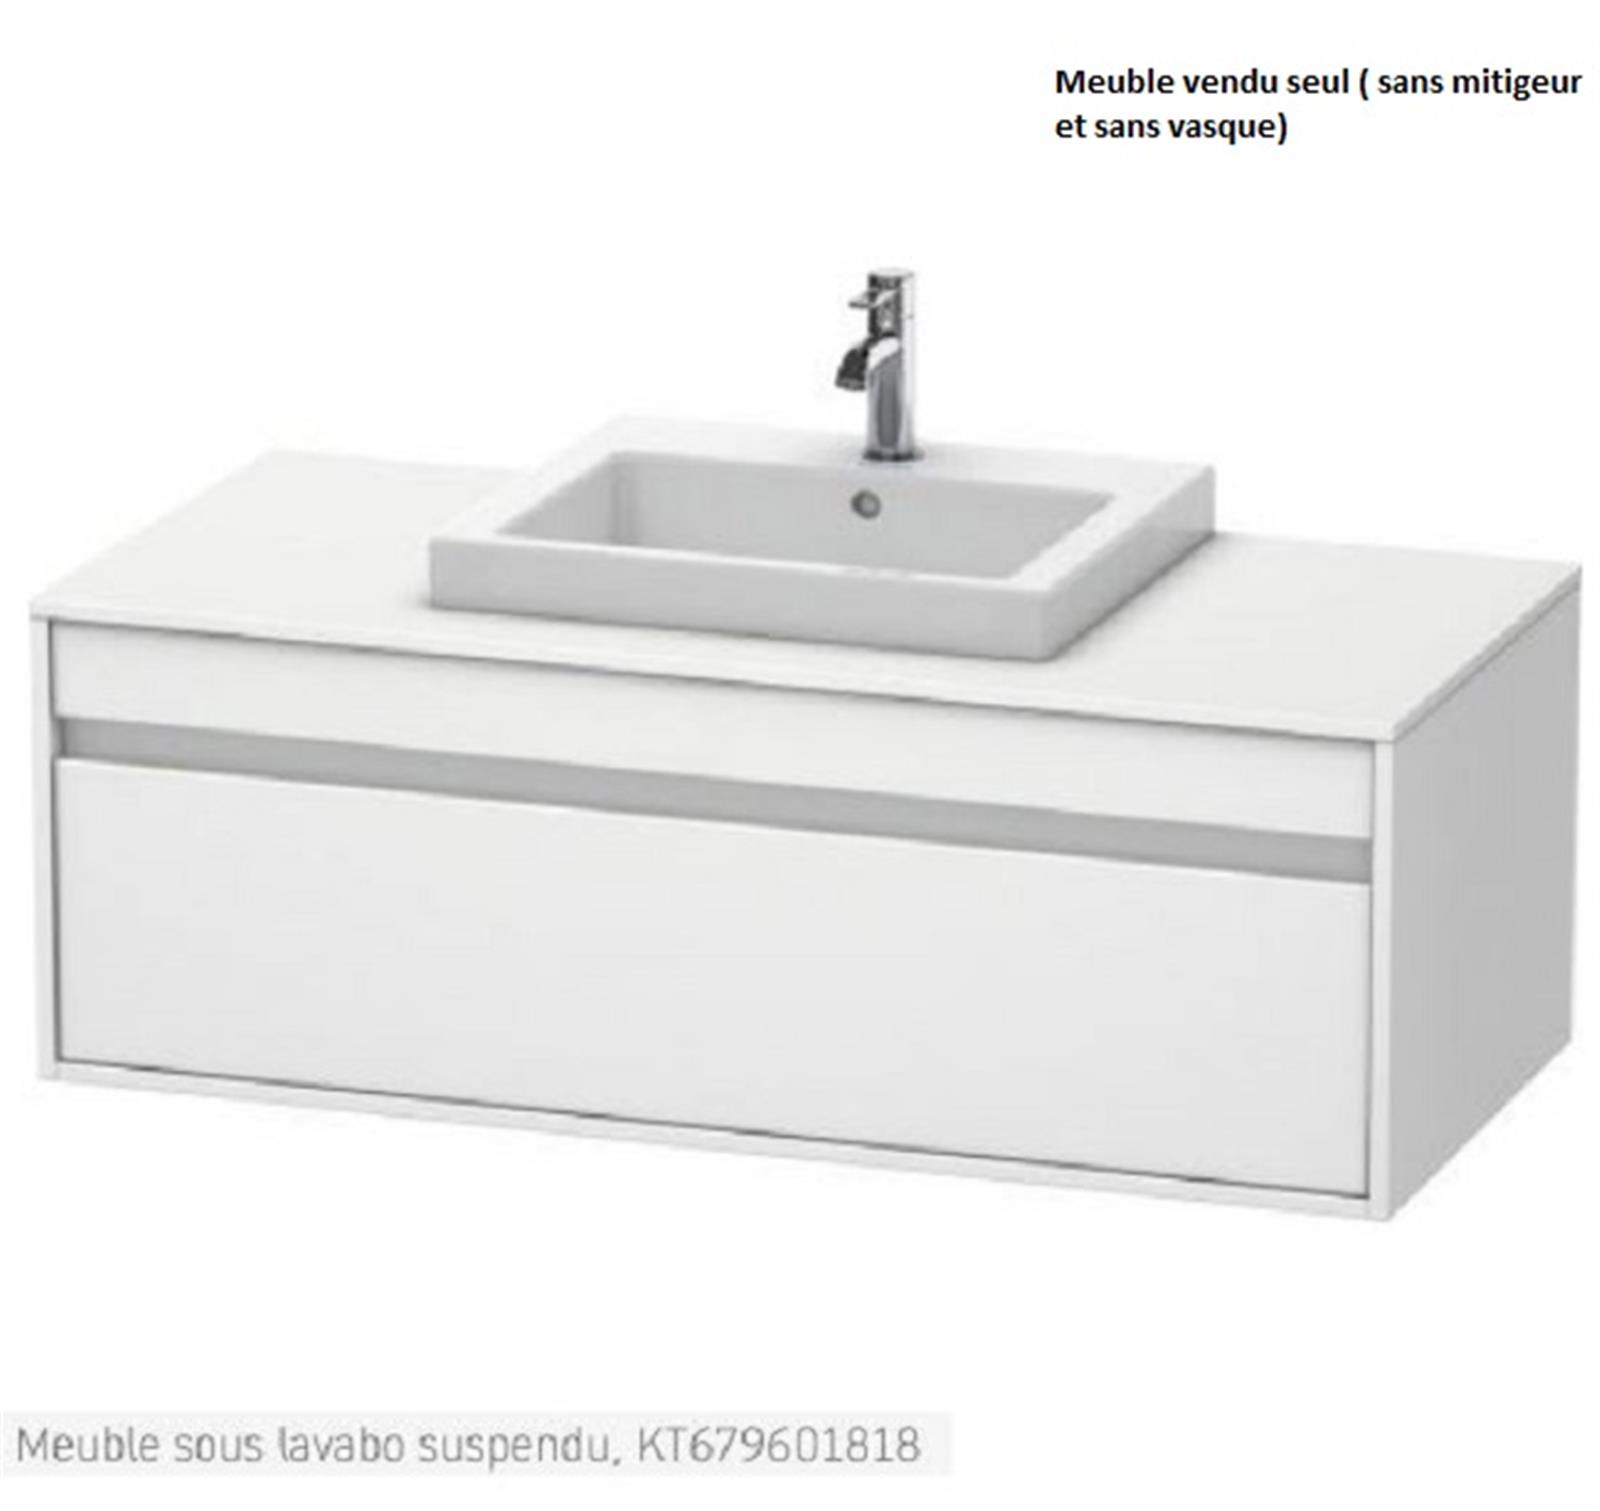 Meuble sous lavabo suspendu Ketho - Meuble sous lavabo- Blanc Mat - Dimensions : 1200 x 550 x 426 mm